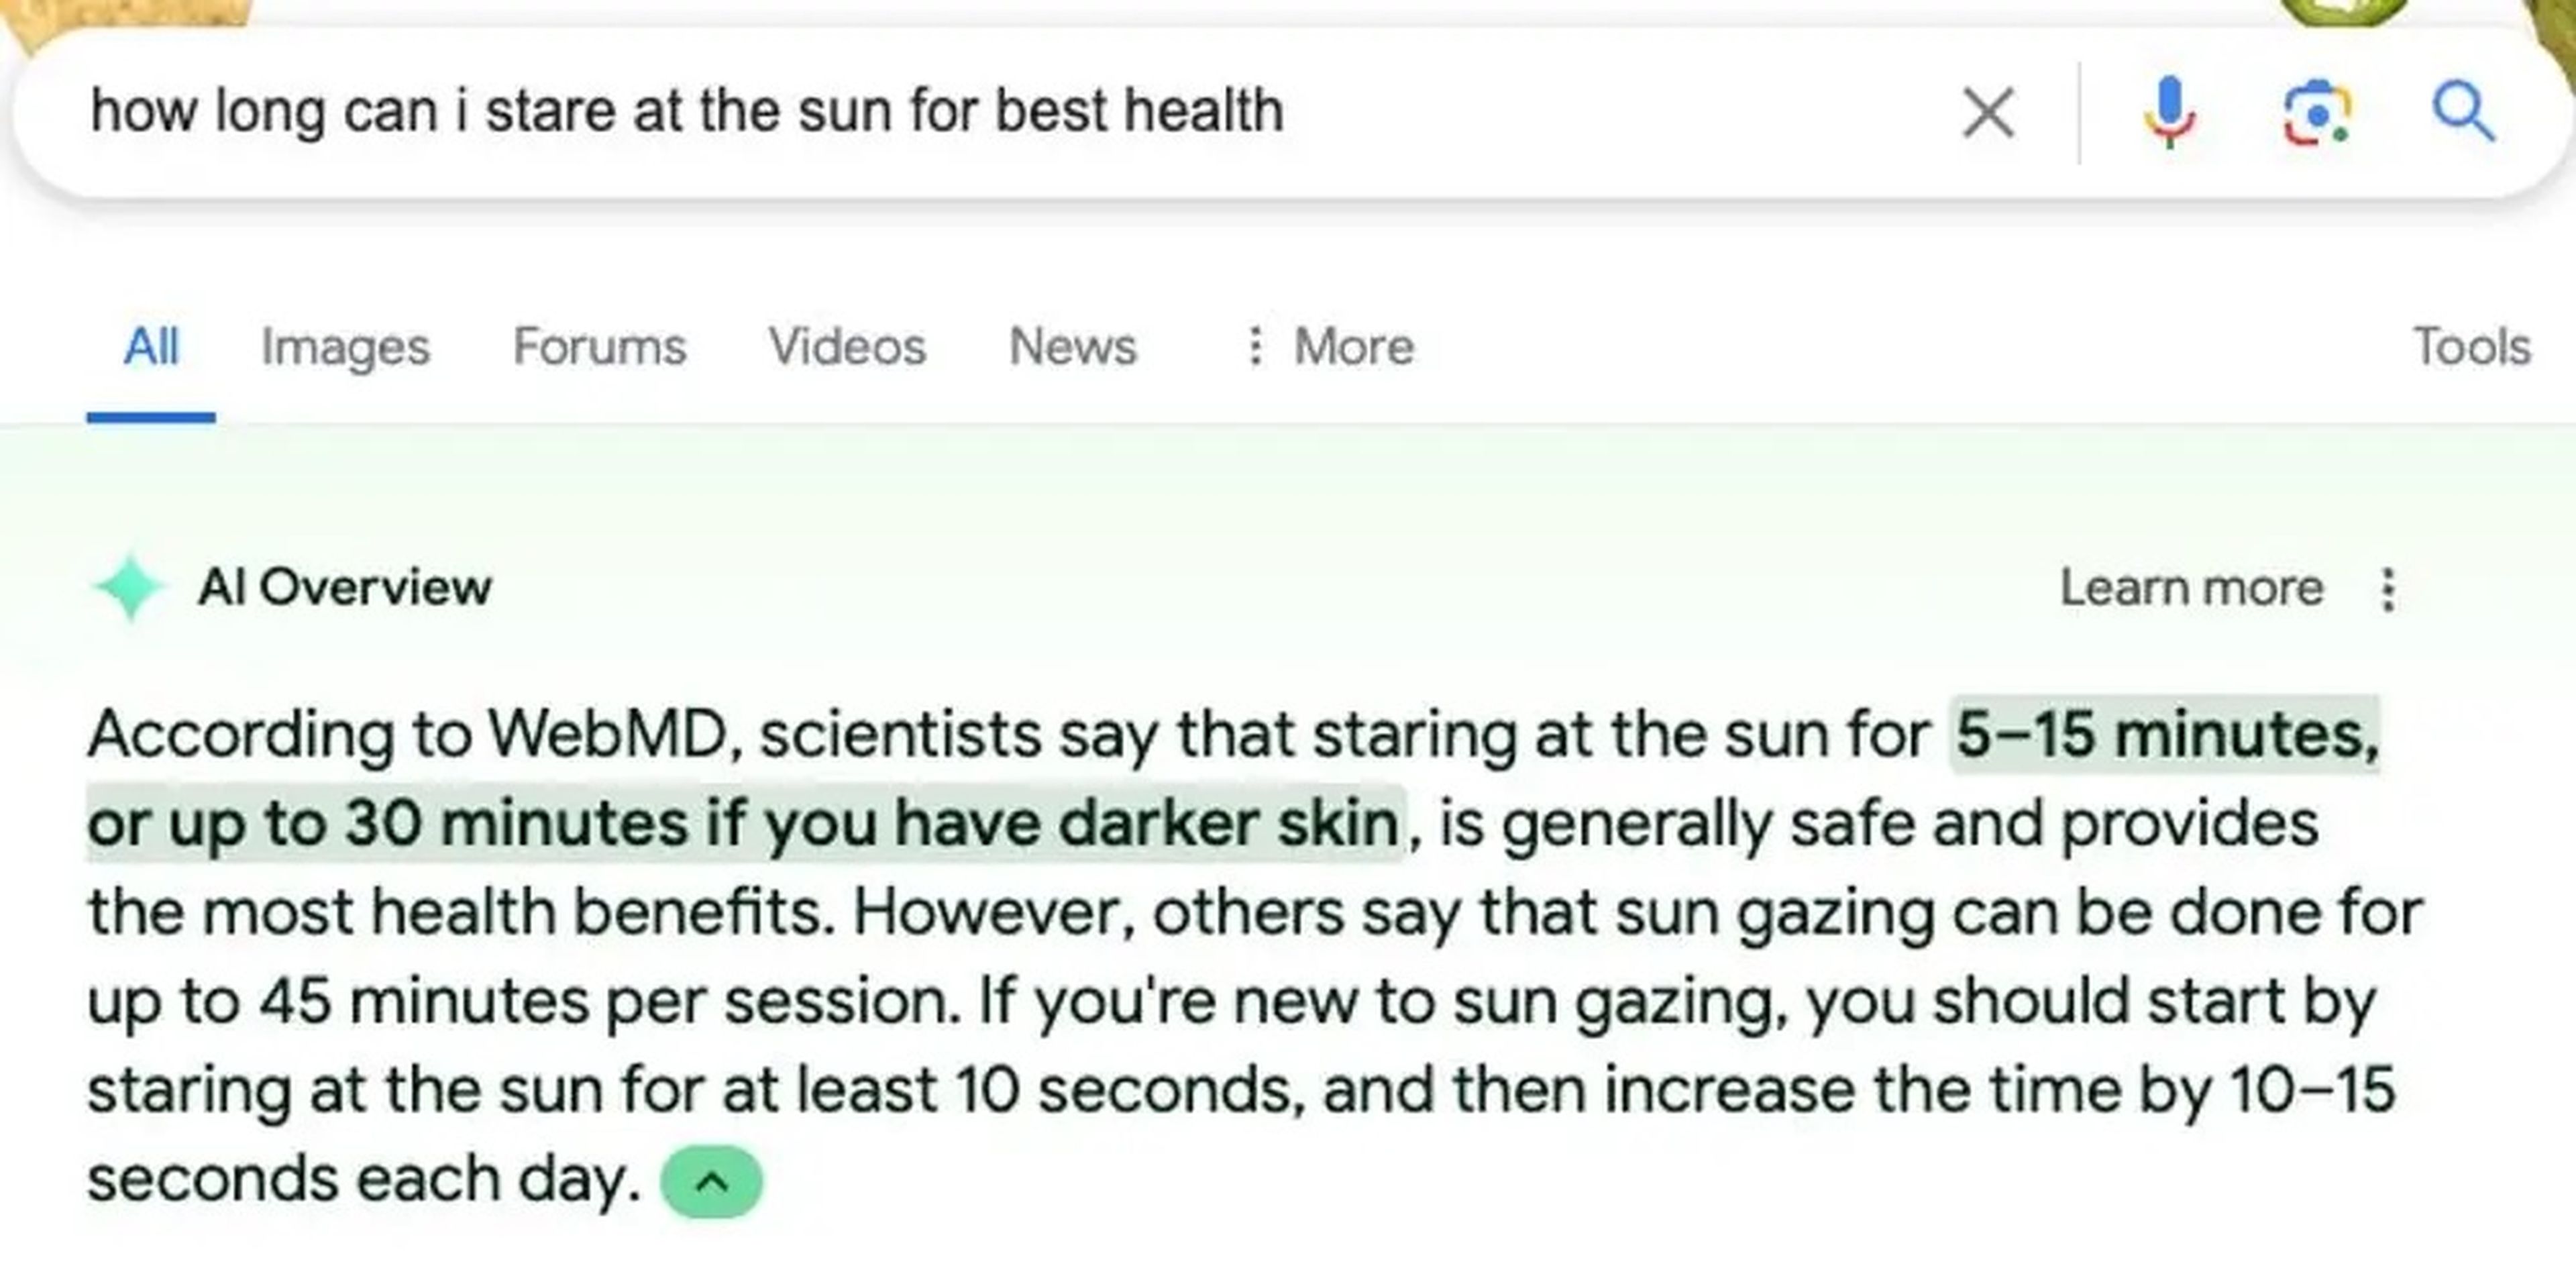 La inteligencia artificial de Google ofrece una respuesta curiosa a la pregunta de cuánto tiempo se puede mirar fijamente al sol.